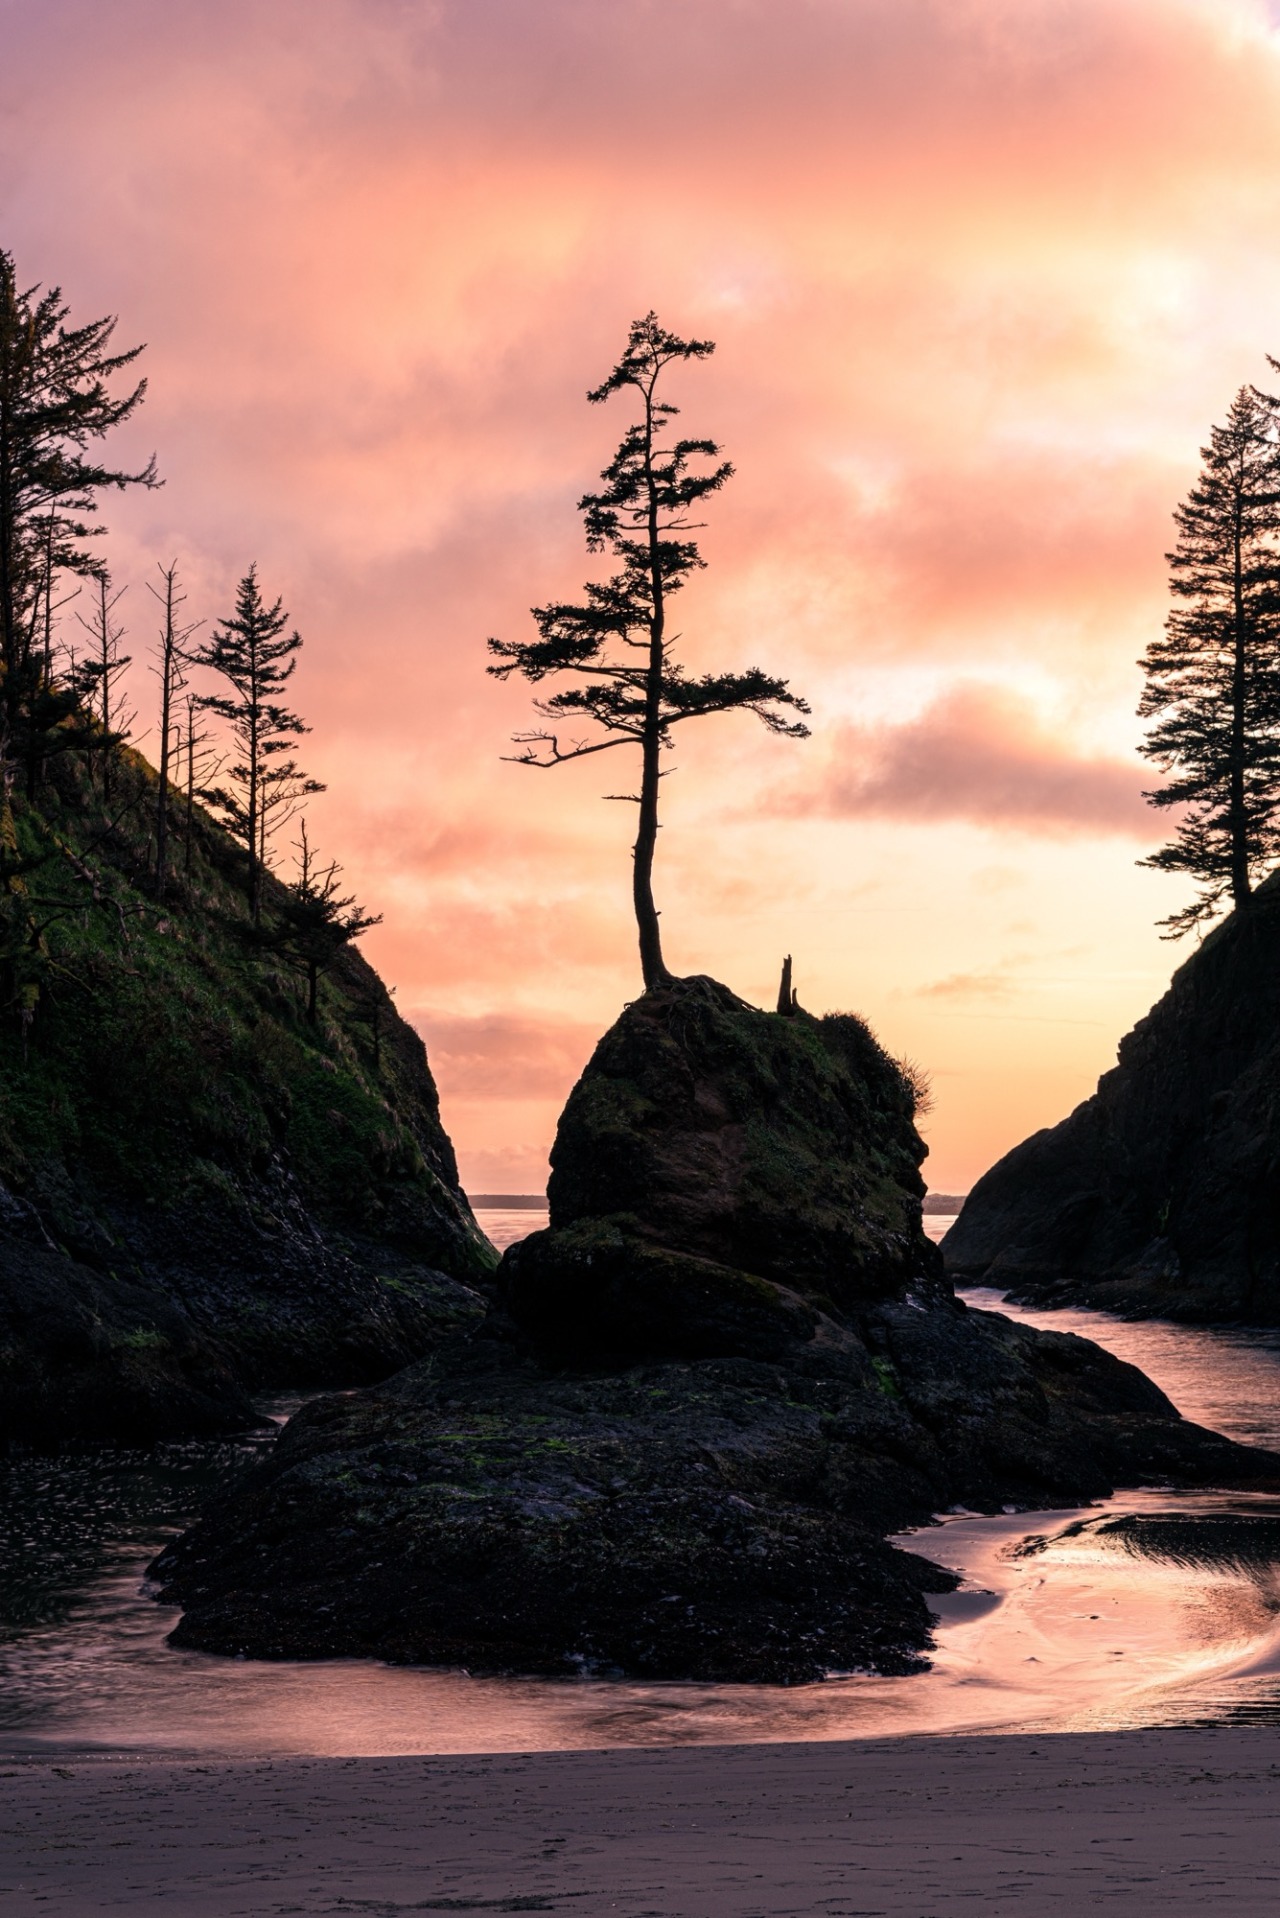 [OC] “Dying Light” Washington, USA - 4002x5997 📷: MicahDickinson #Nature#mothernature#beach#sunset#landscape#sunrise#animal#animals#naturephotography